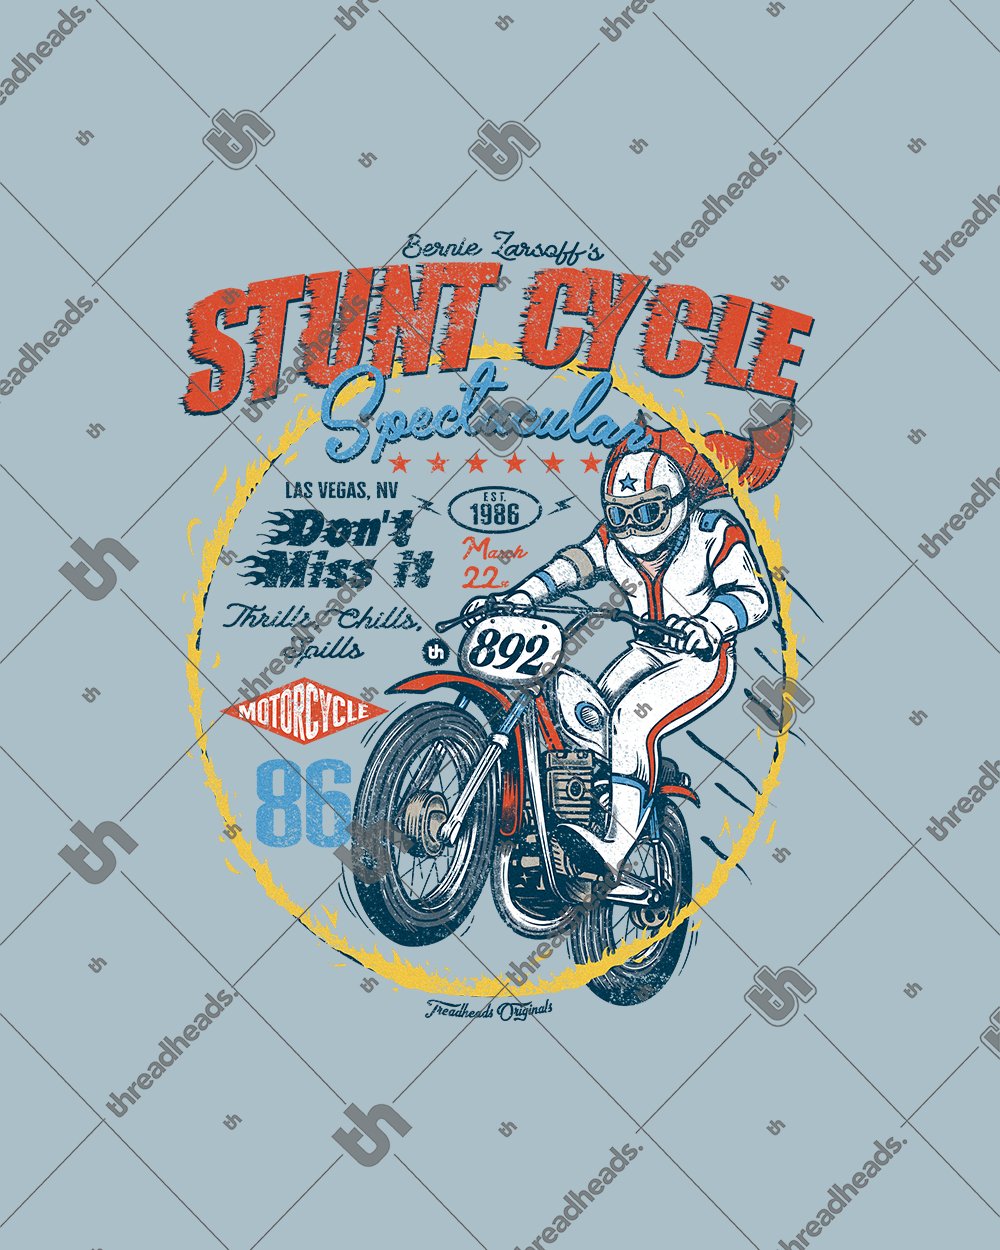 Stunt Cycle T-Shirt Australia Online #colour_pale blue